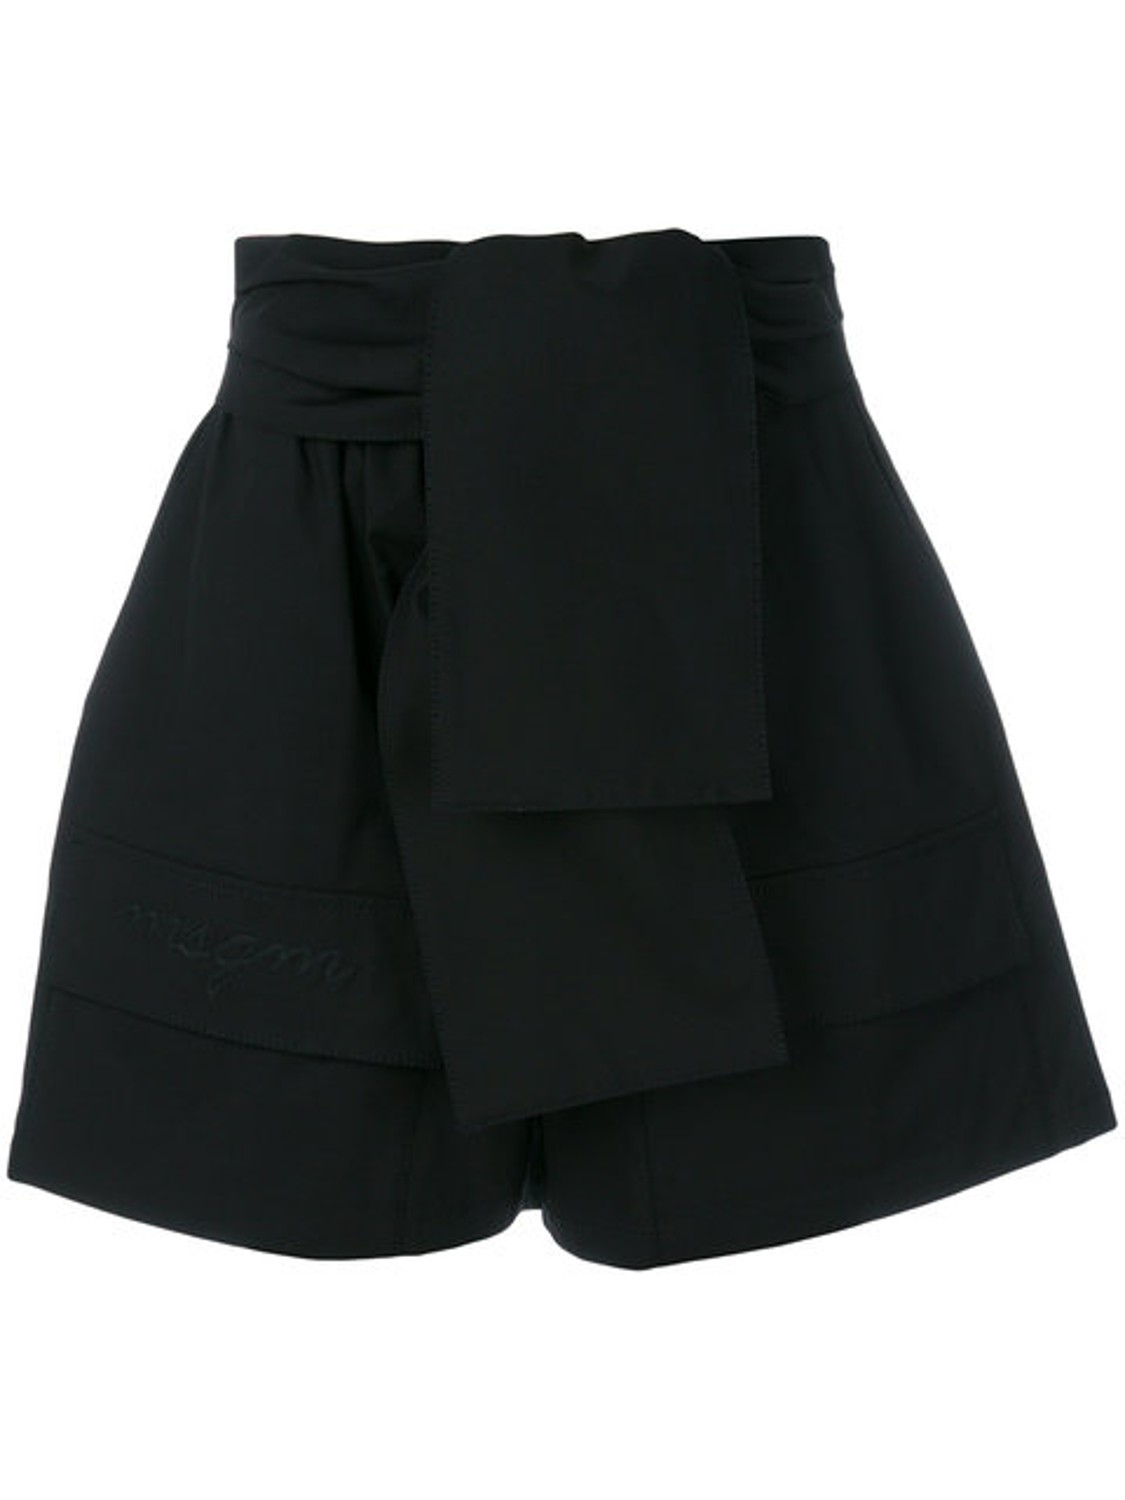 shop MSGM  Pantaloni: Pantaloncini MSGM, logo su tasca davanti, fiocco in vita, elastico in vita, chiusura con zip.

Composizione: 100% cotone. number 1251